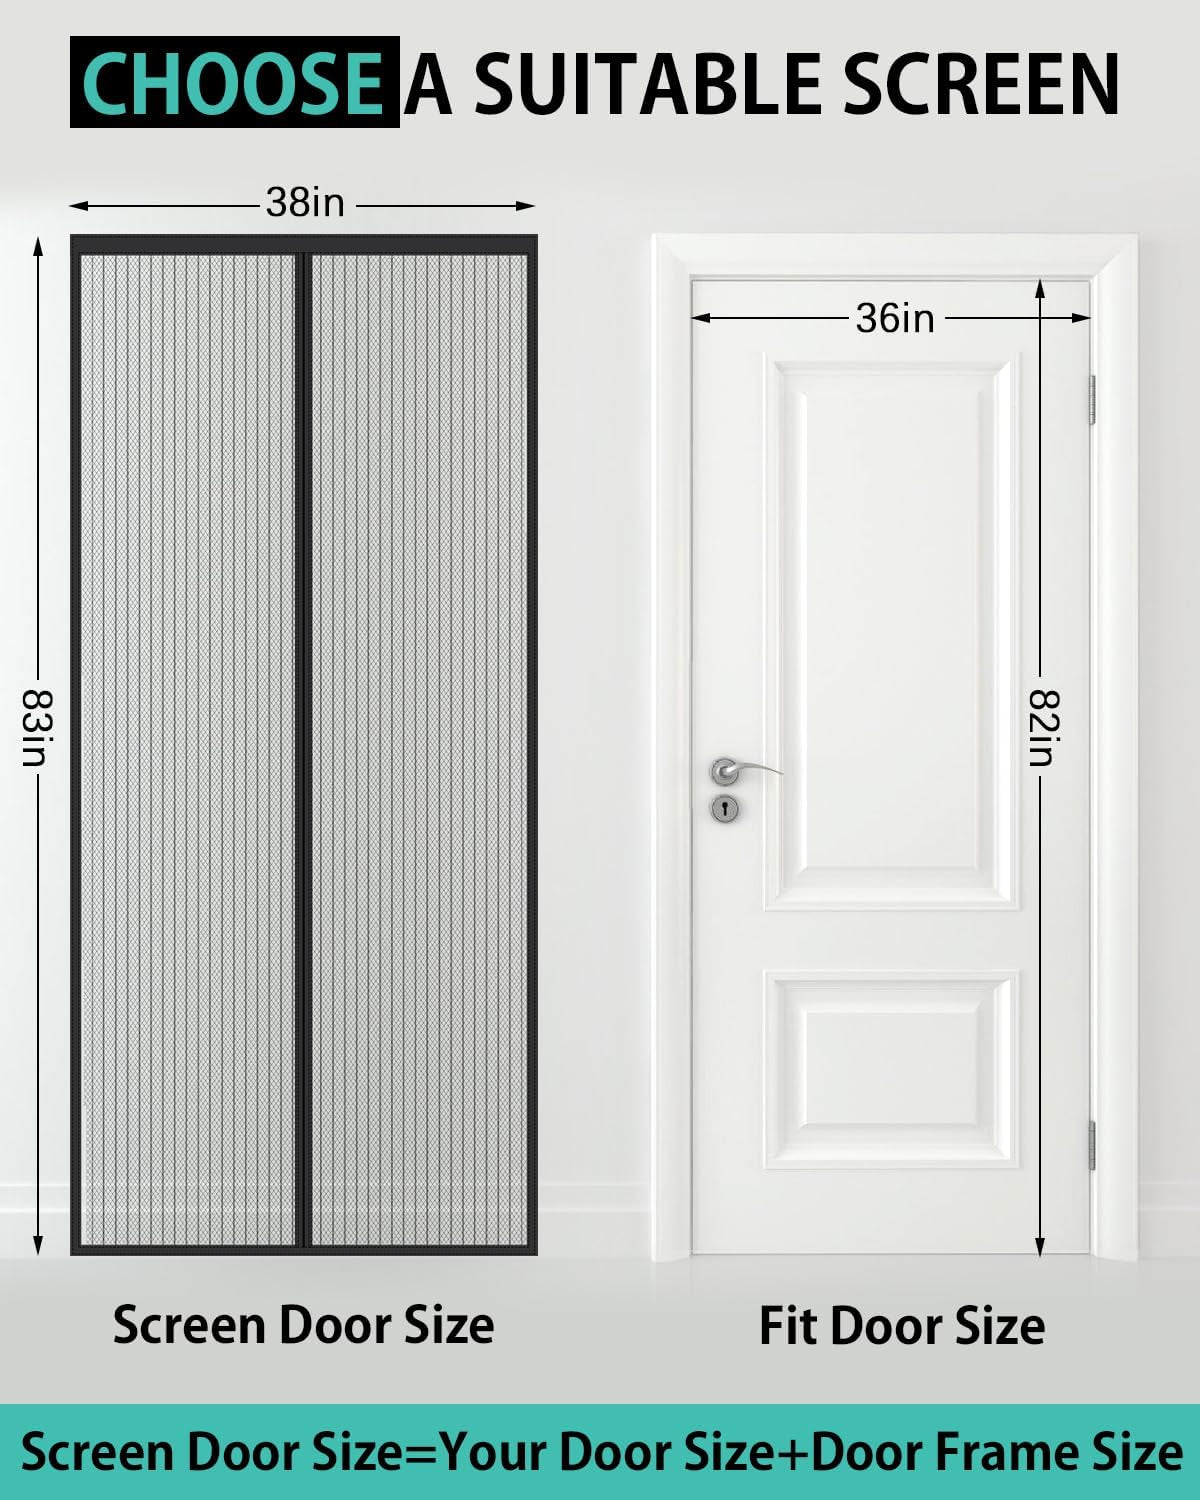 Magnetic Screen Door Fit Door Size to 36" X 82"(Screen Itself Size: 38" X 83"), Heavy Duty Self Closing Screen Door with Hook Tapes for Interior Door, Pet and Kid Friendly